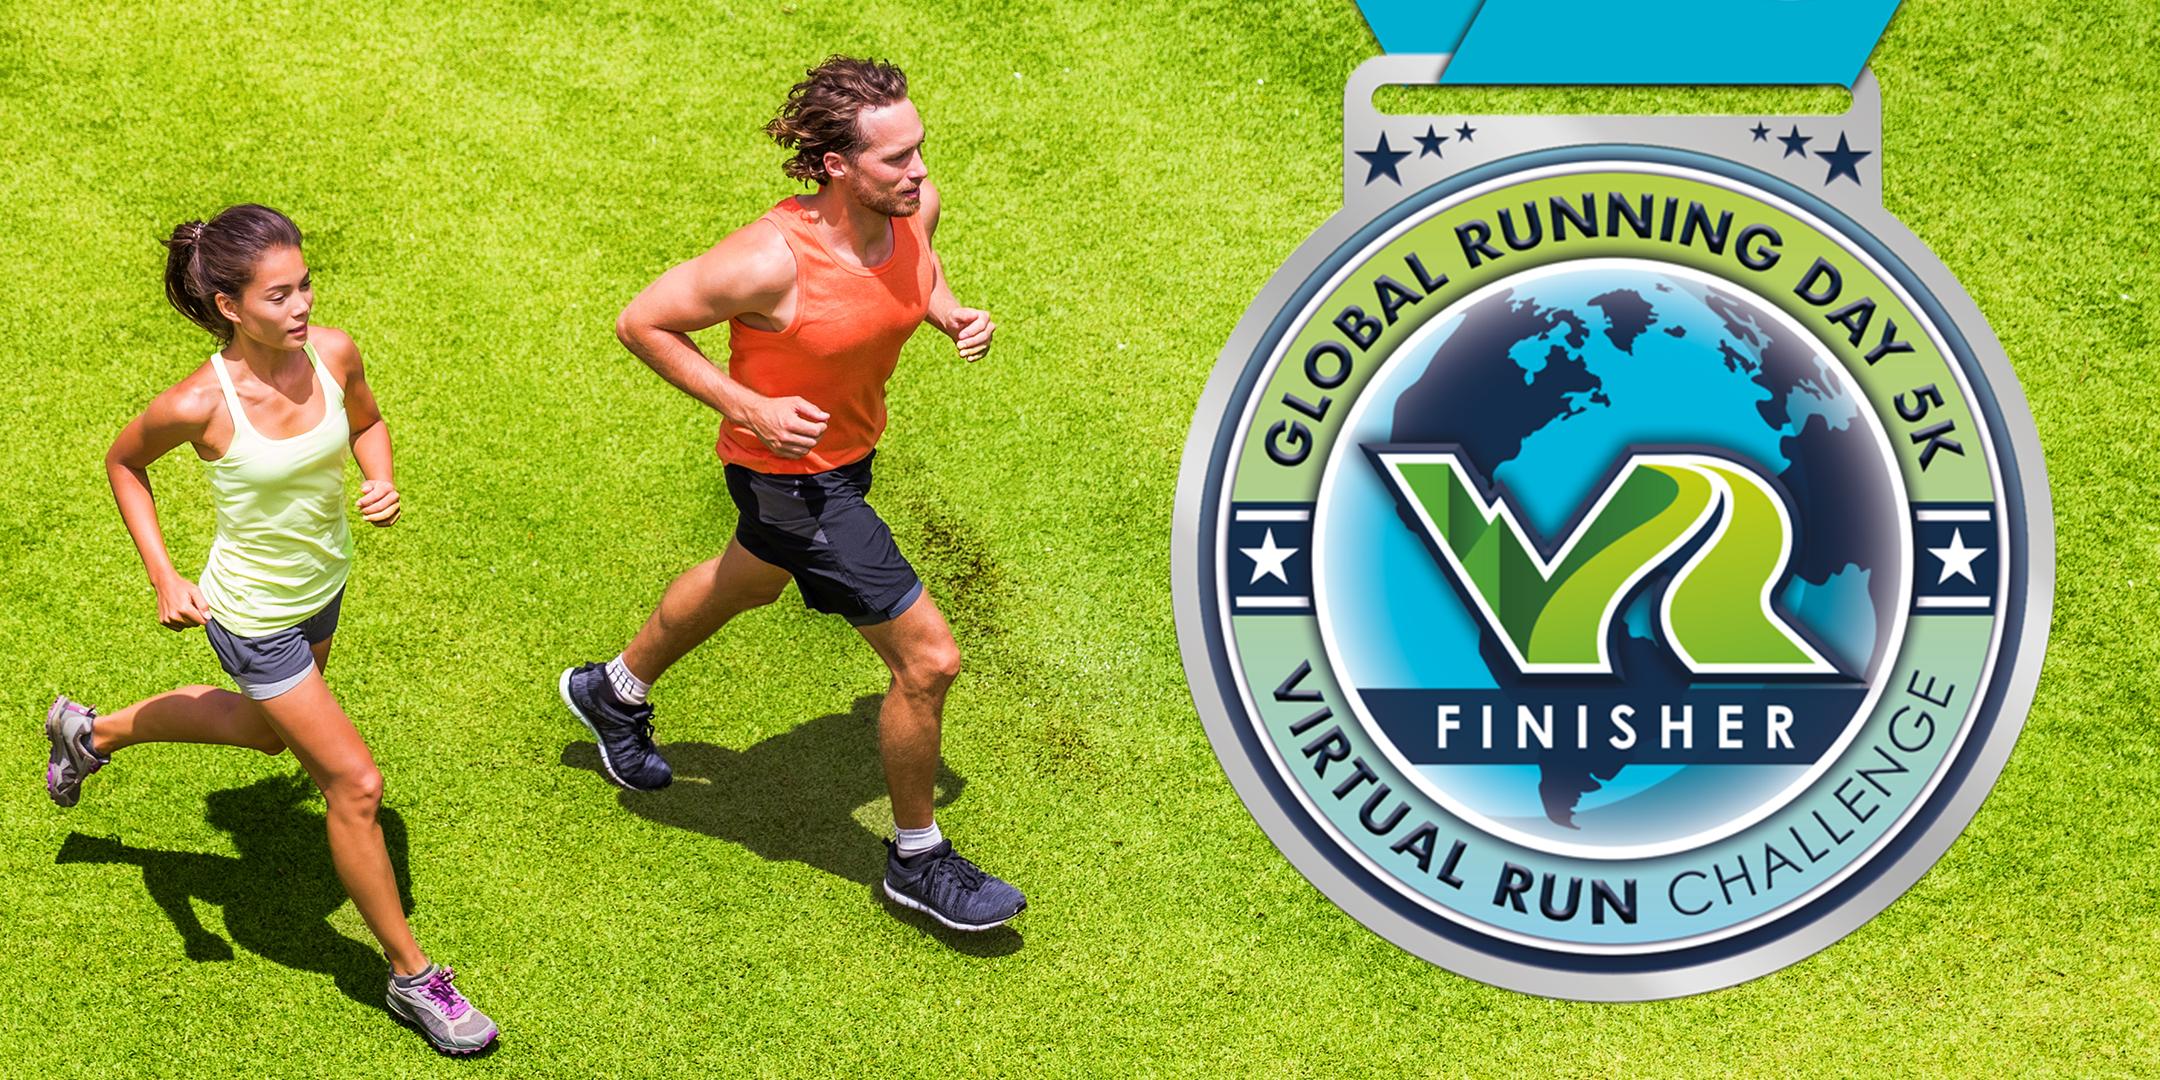 2020 Global Running Day Free Virtual 5k - Boston